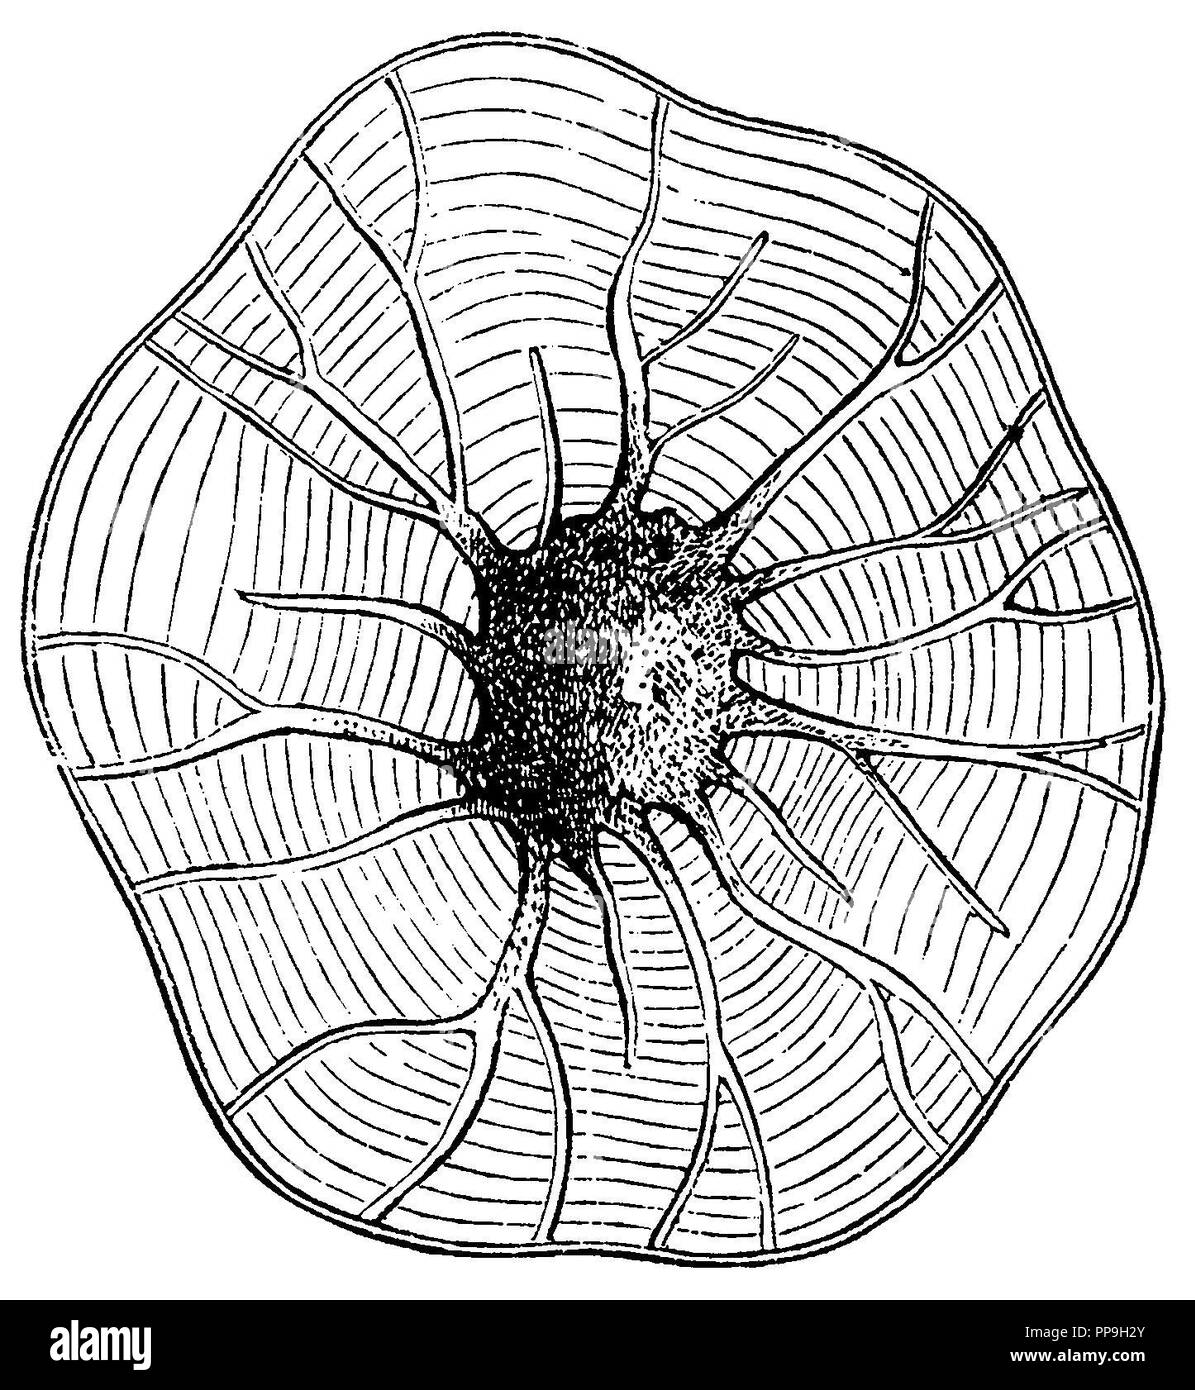 Nussbaum, Stein Zelle mit verzweigten Auswurfkrümmer Kanäle aus der Walnuss shell, anonym Stockfoto